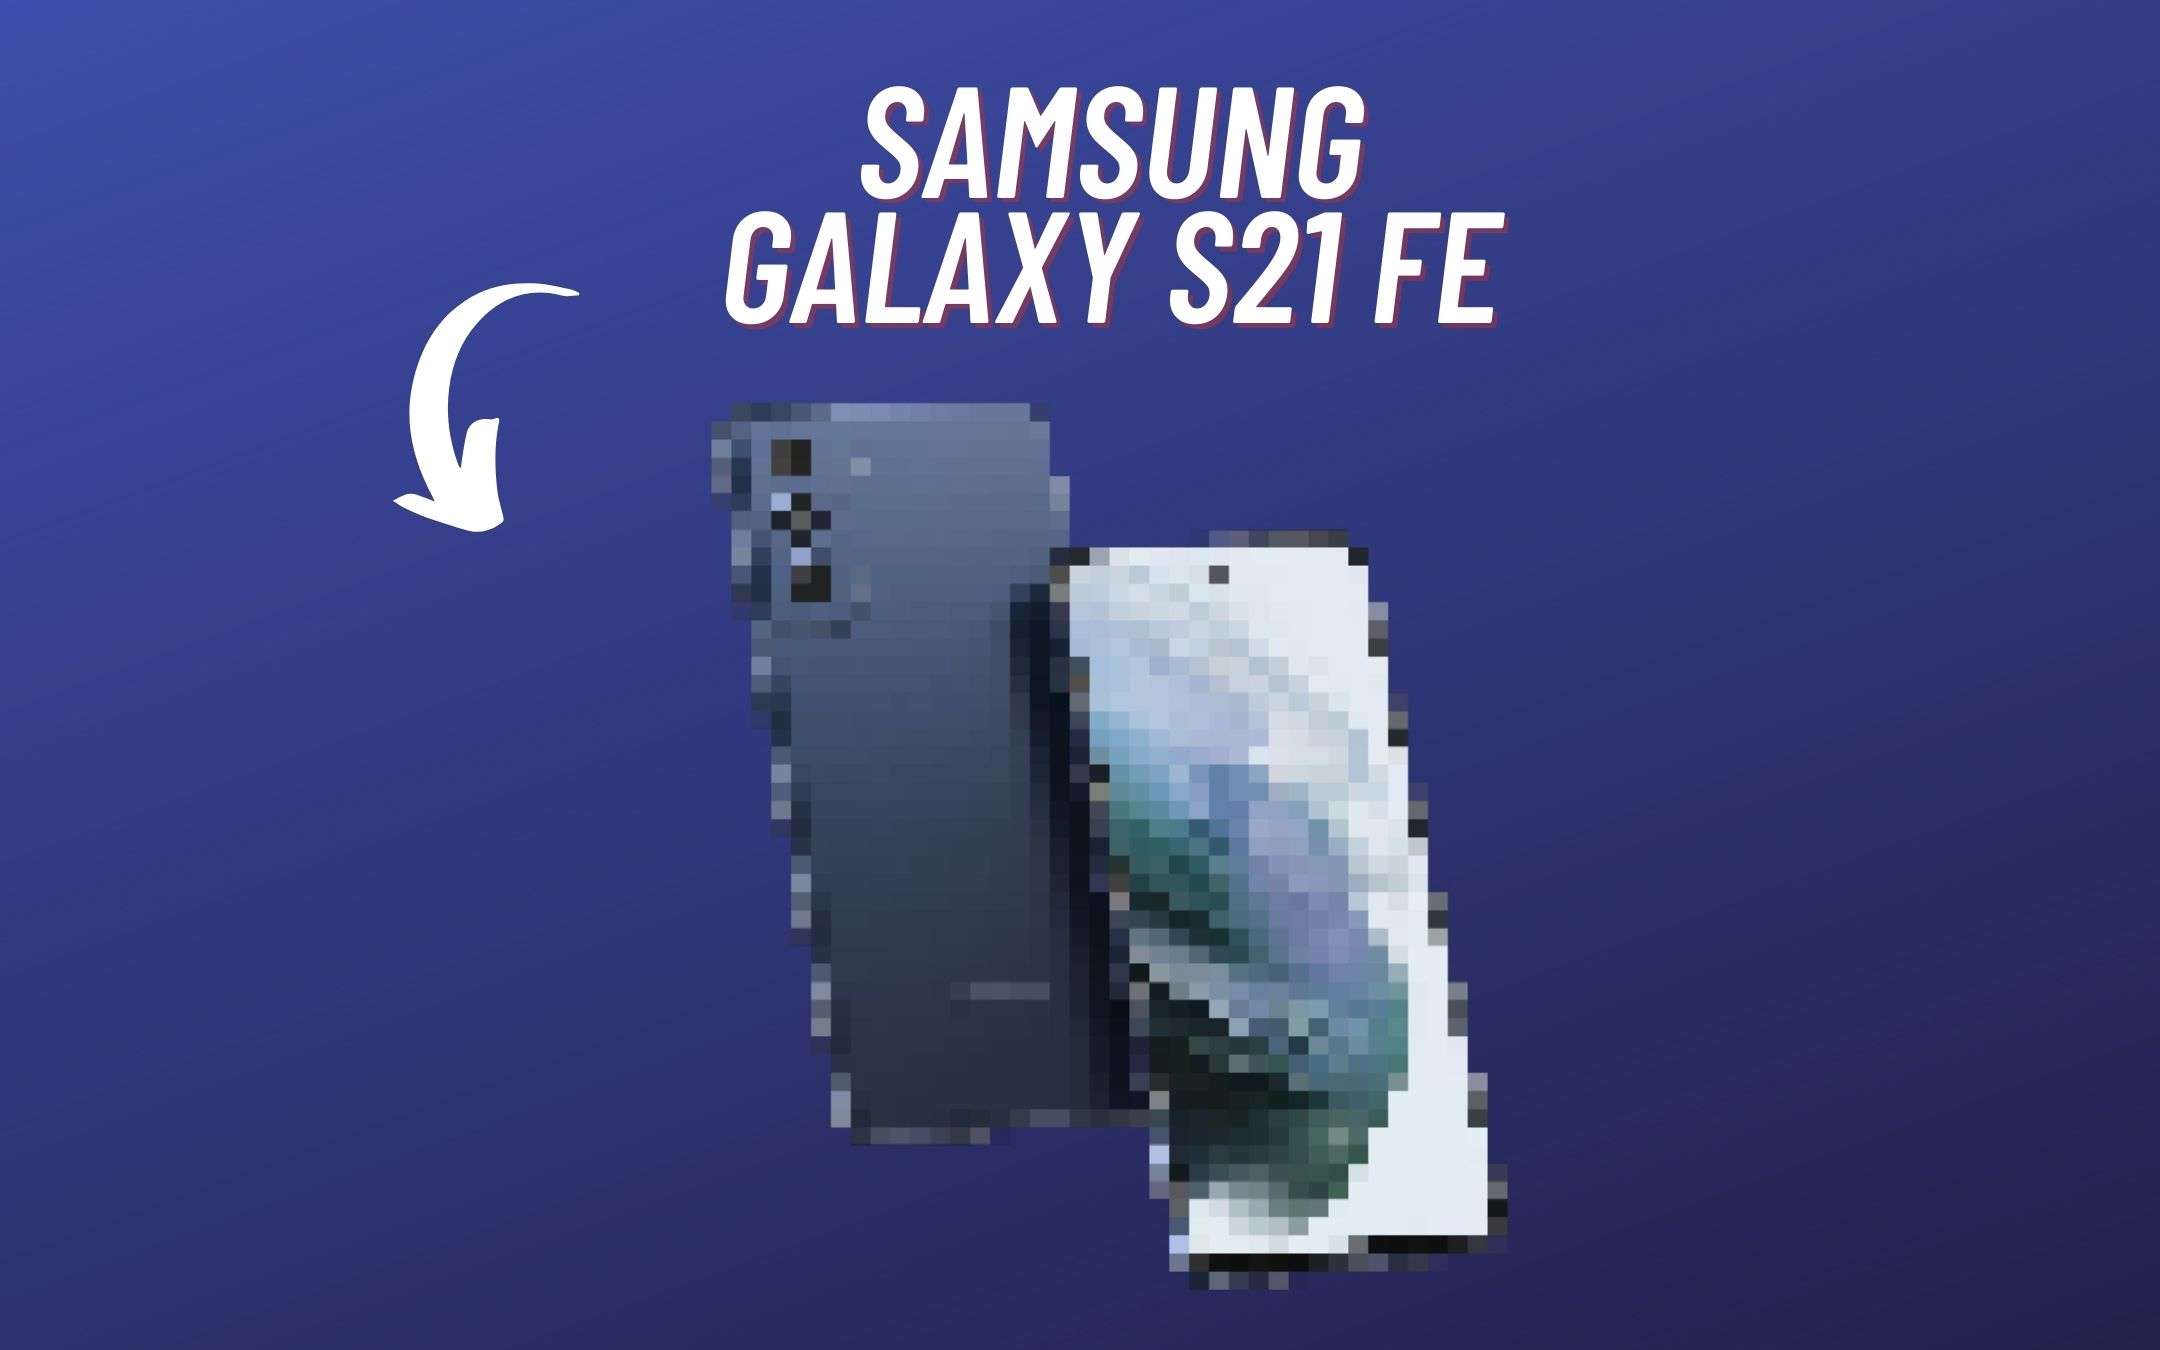 Tutti pazzi per il Samsung Galaxy S21 FE